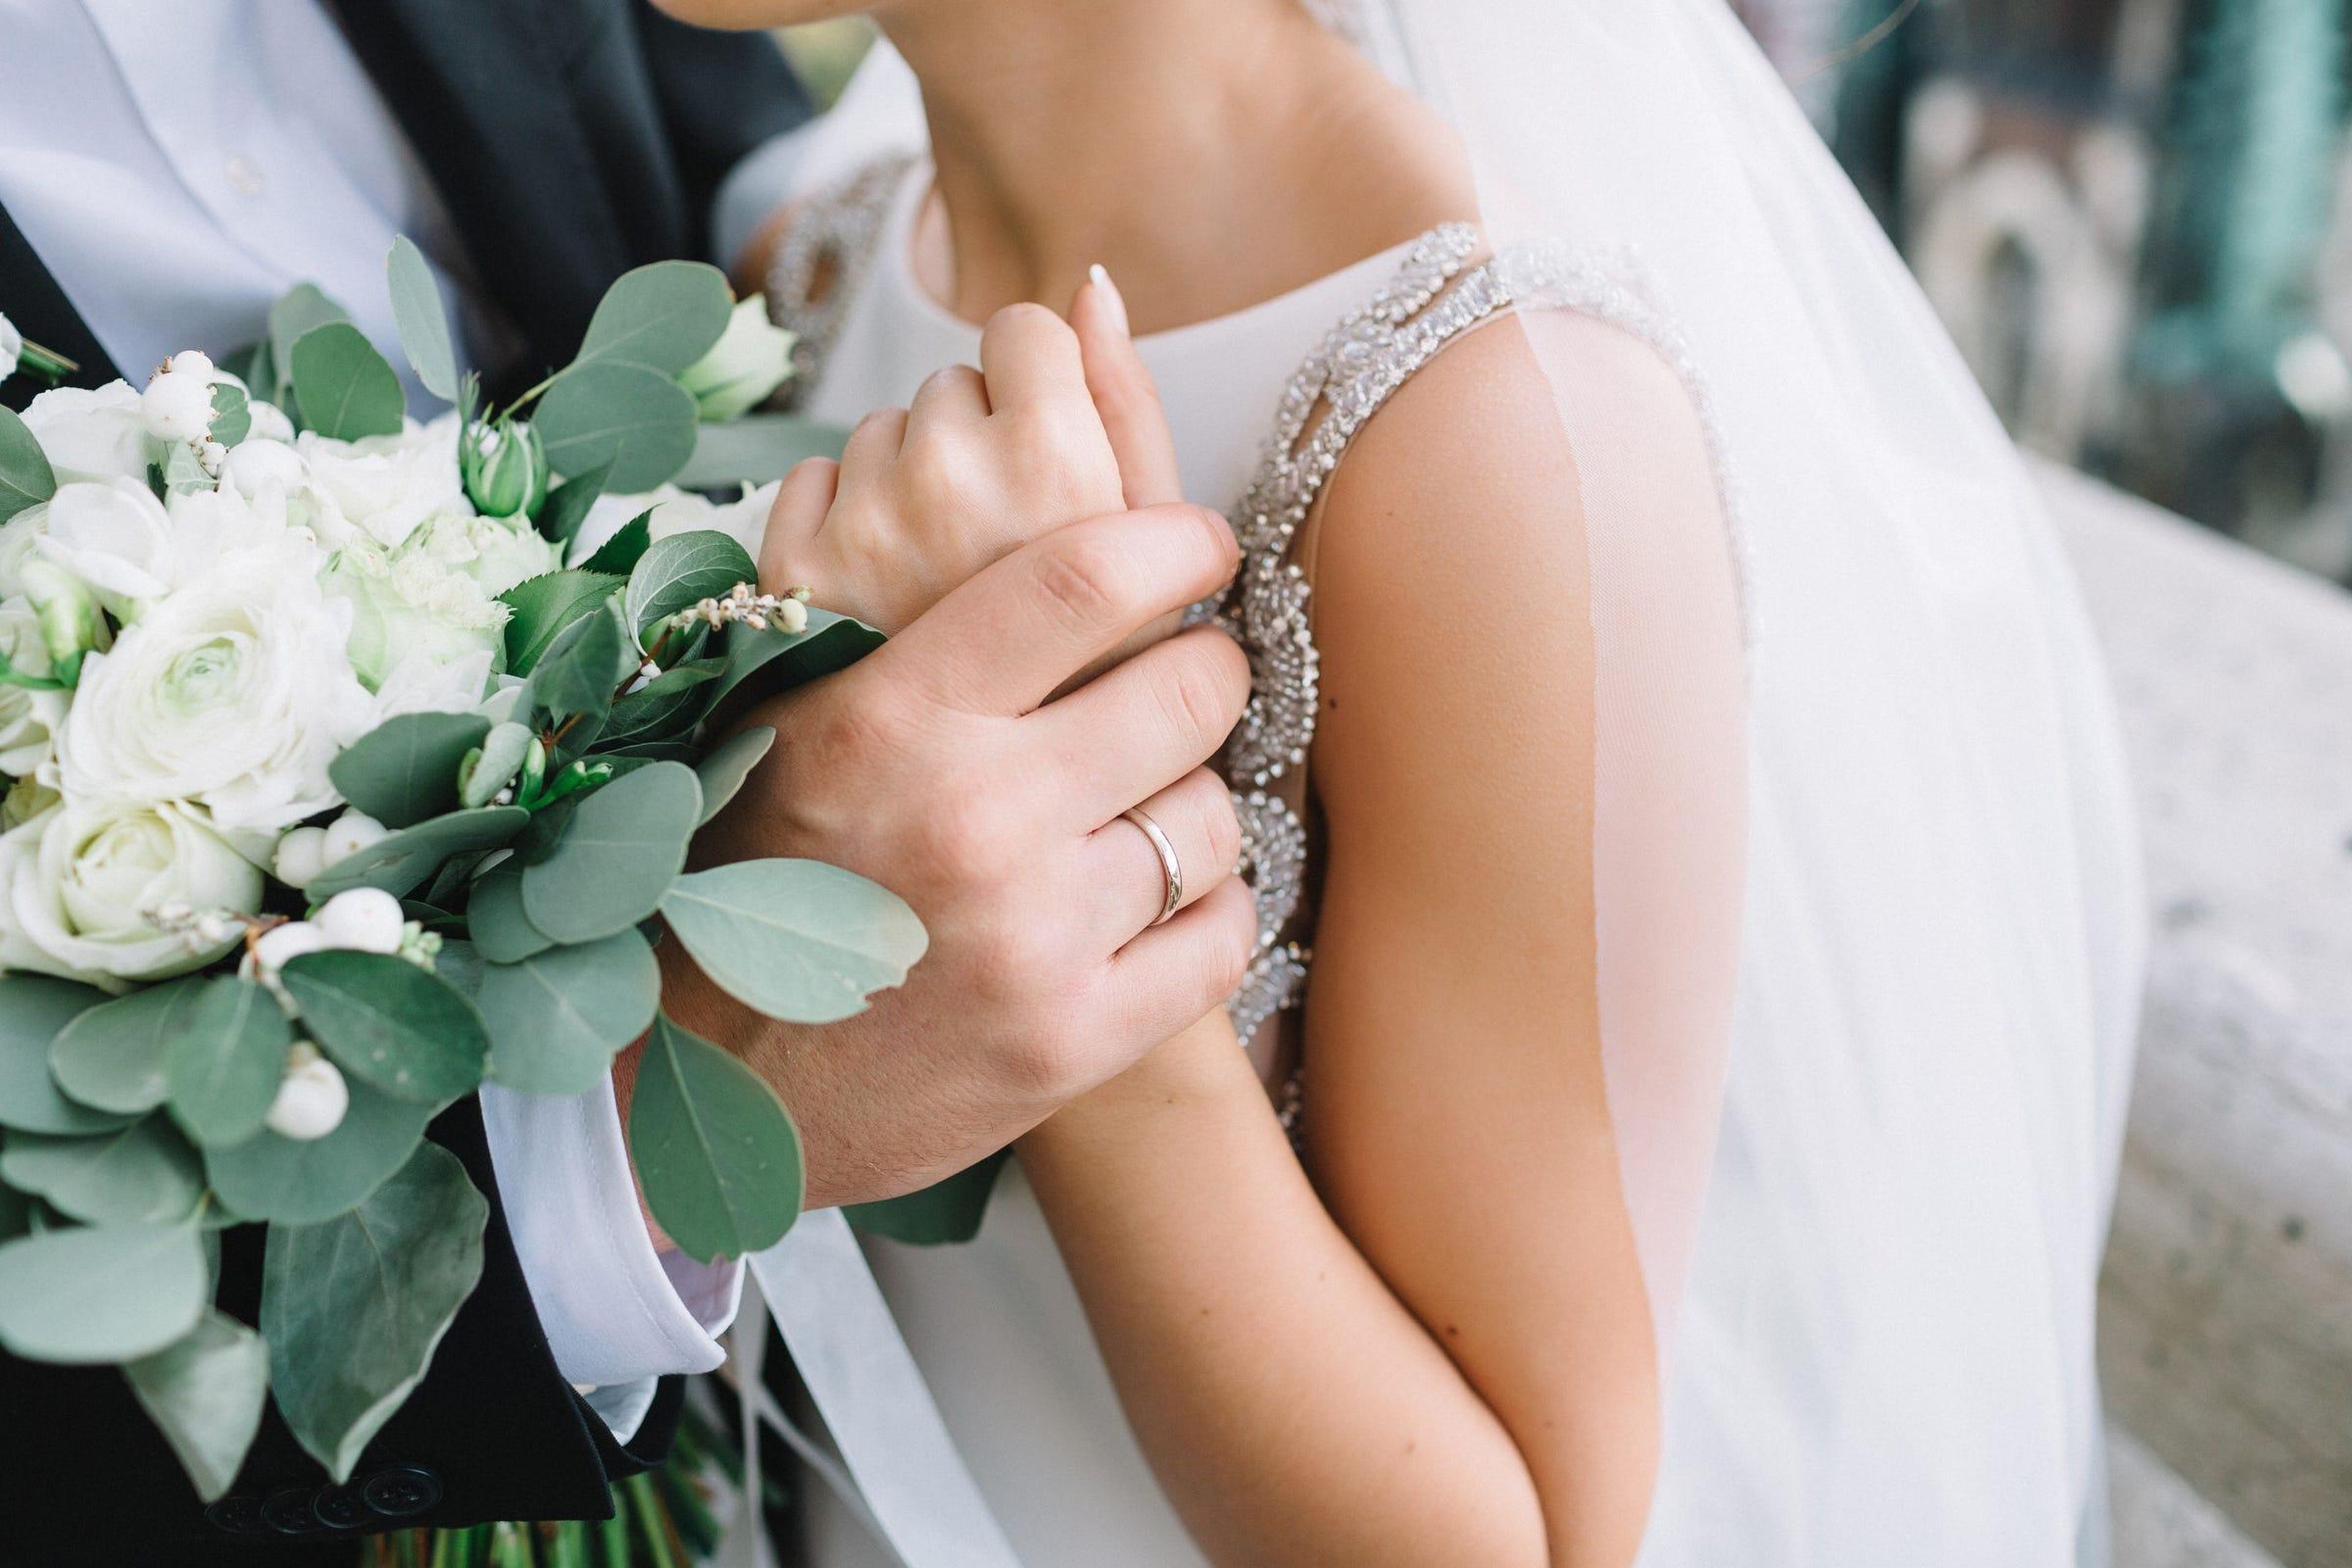 Hay algunas formas de reducir costes sin afectar negativamente la calidad de tu boda.